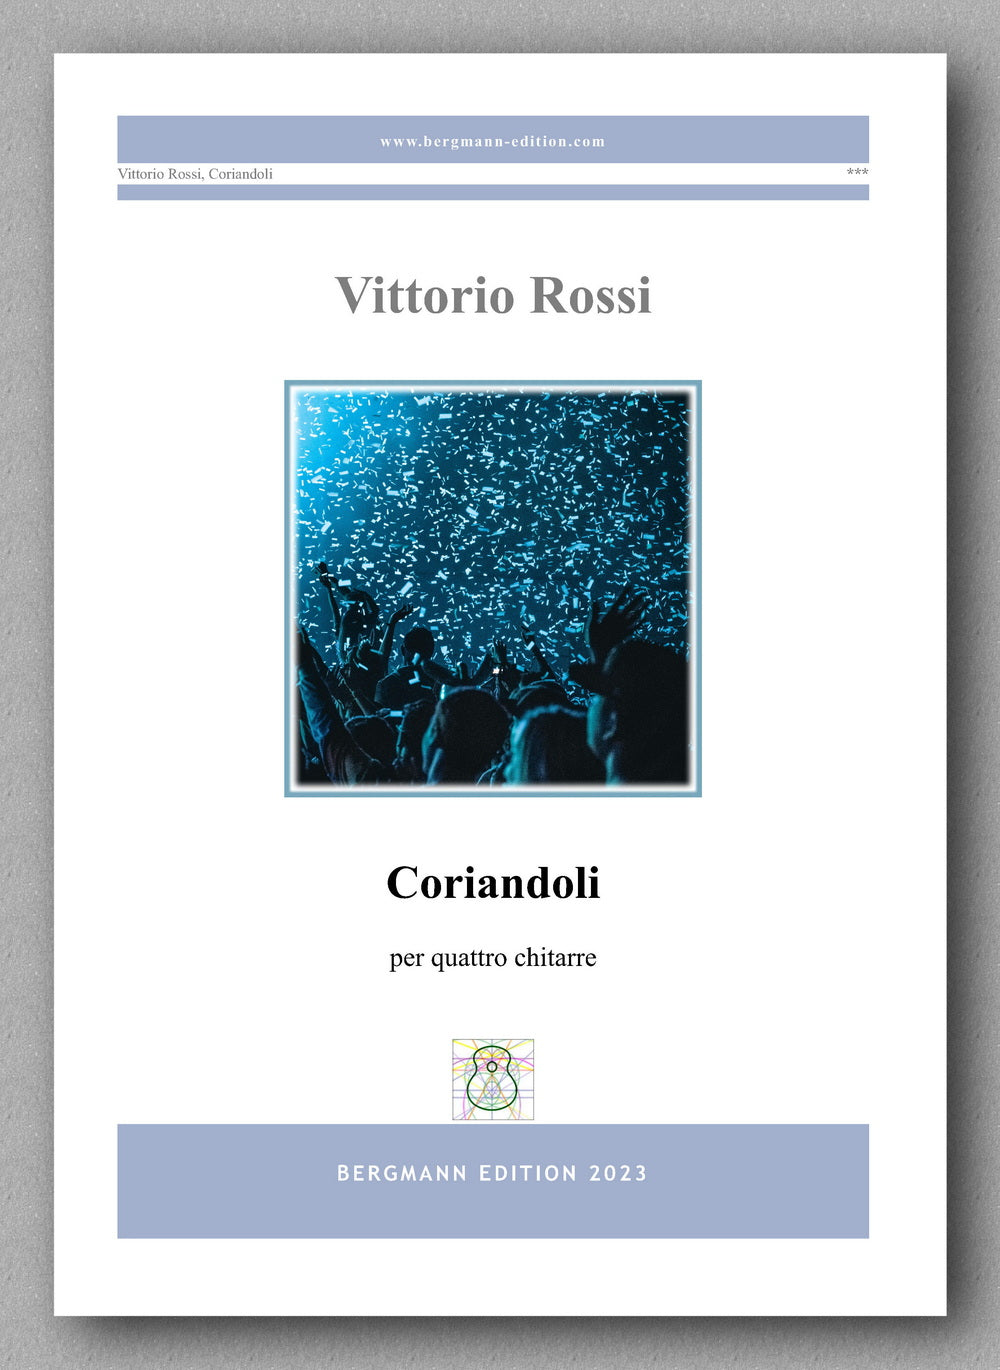 Vittori Rossi, Coriandoli - preview of the cover